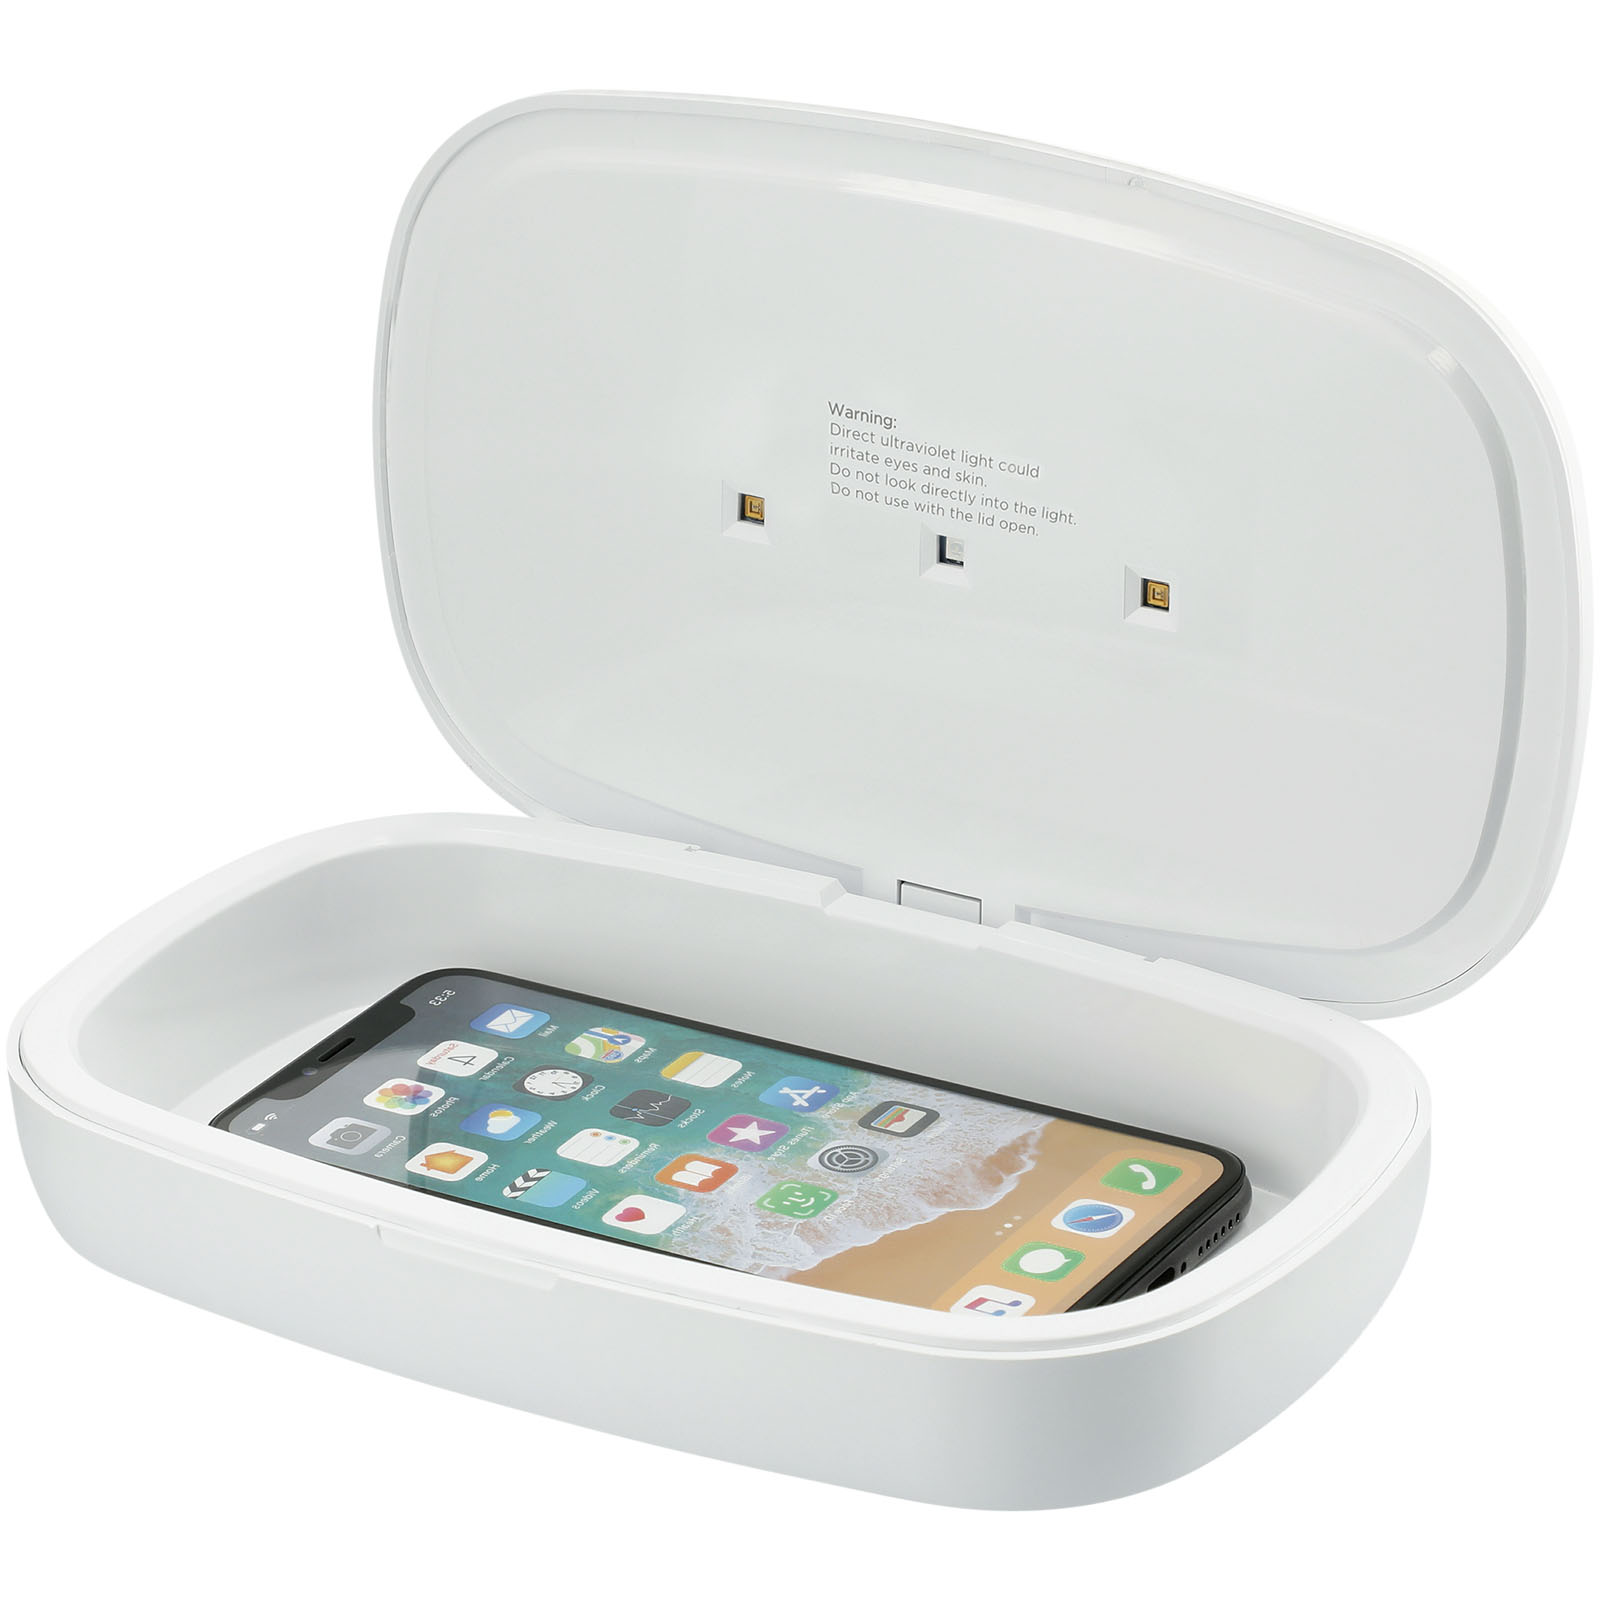 Chargeurs sans fil - Boitier de stérilisation UV pour smartphone Capsule avec chargeur à induction 5W